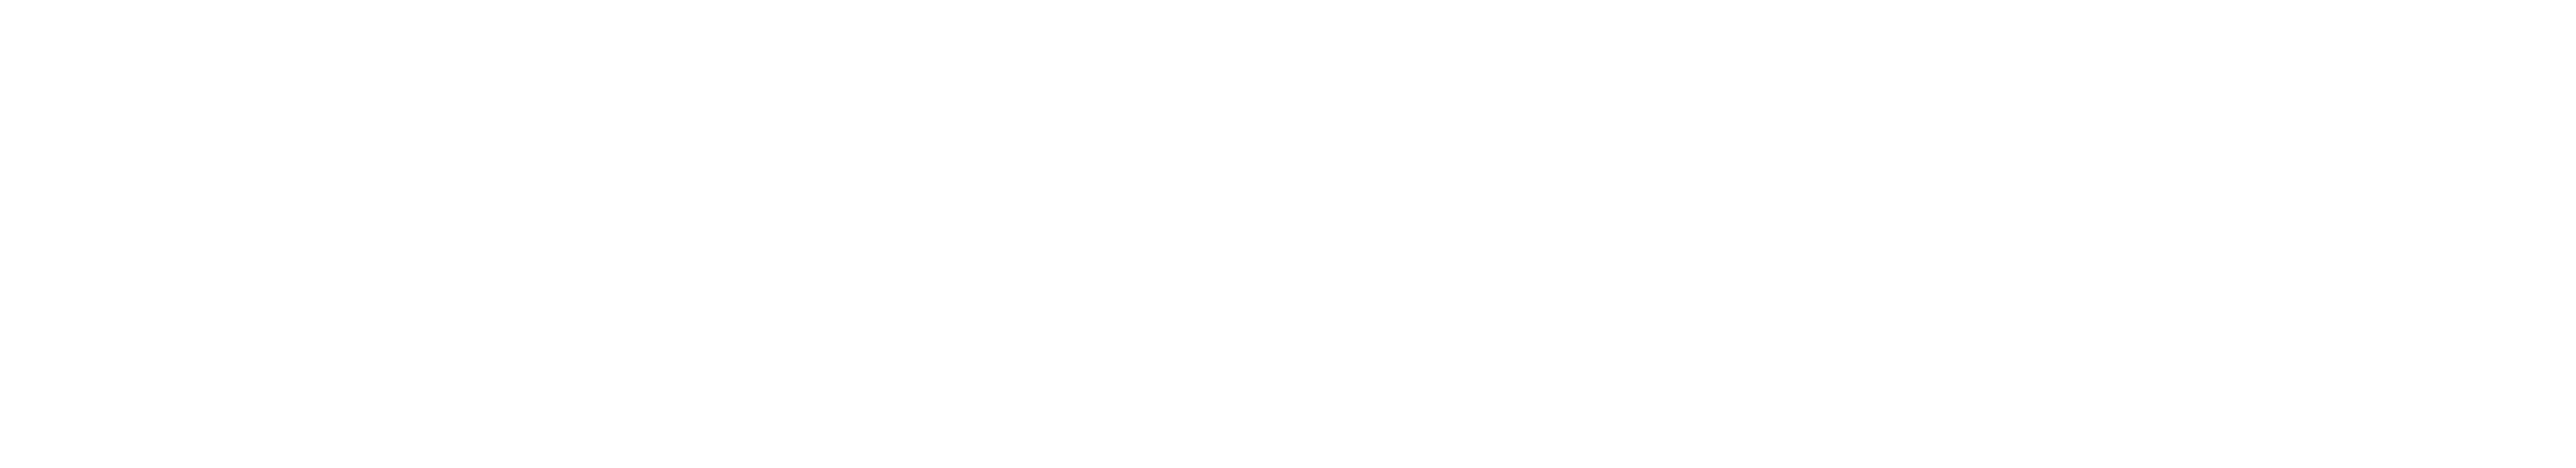 Duggins Welding logo